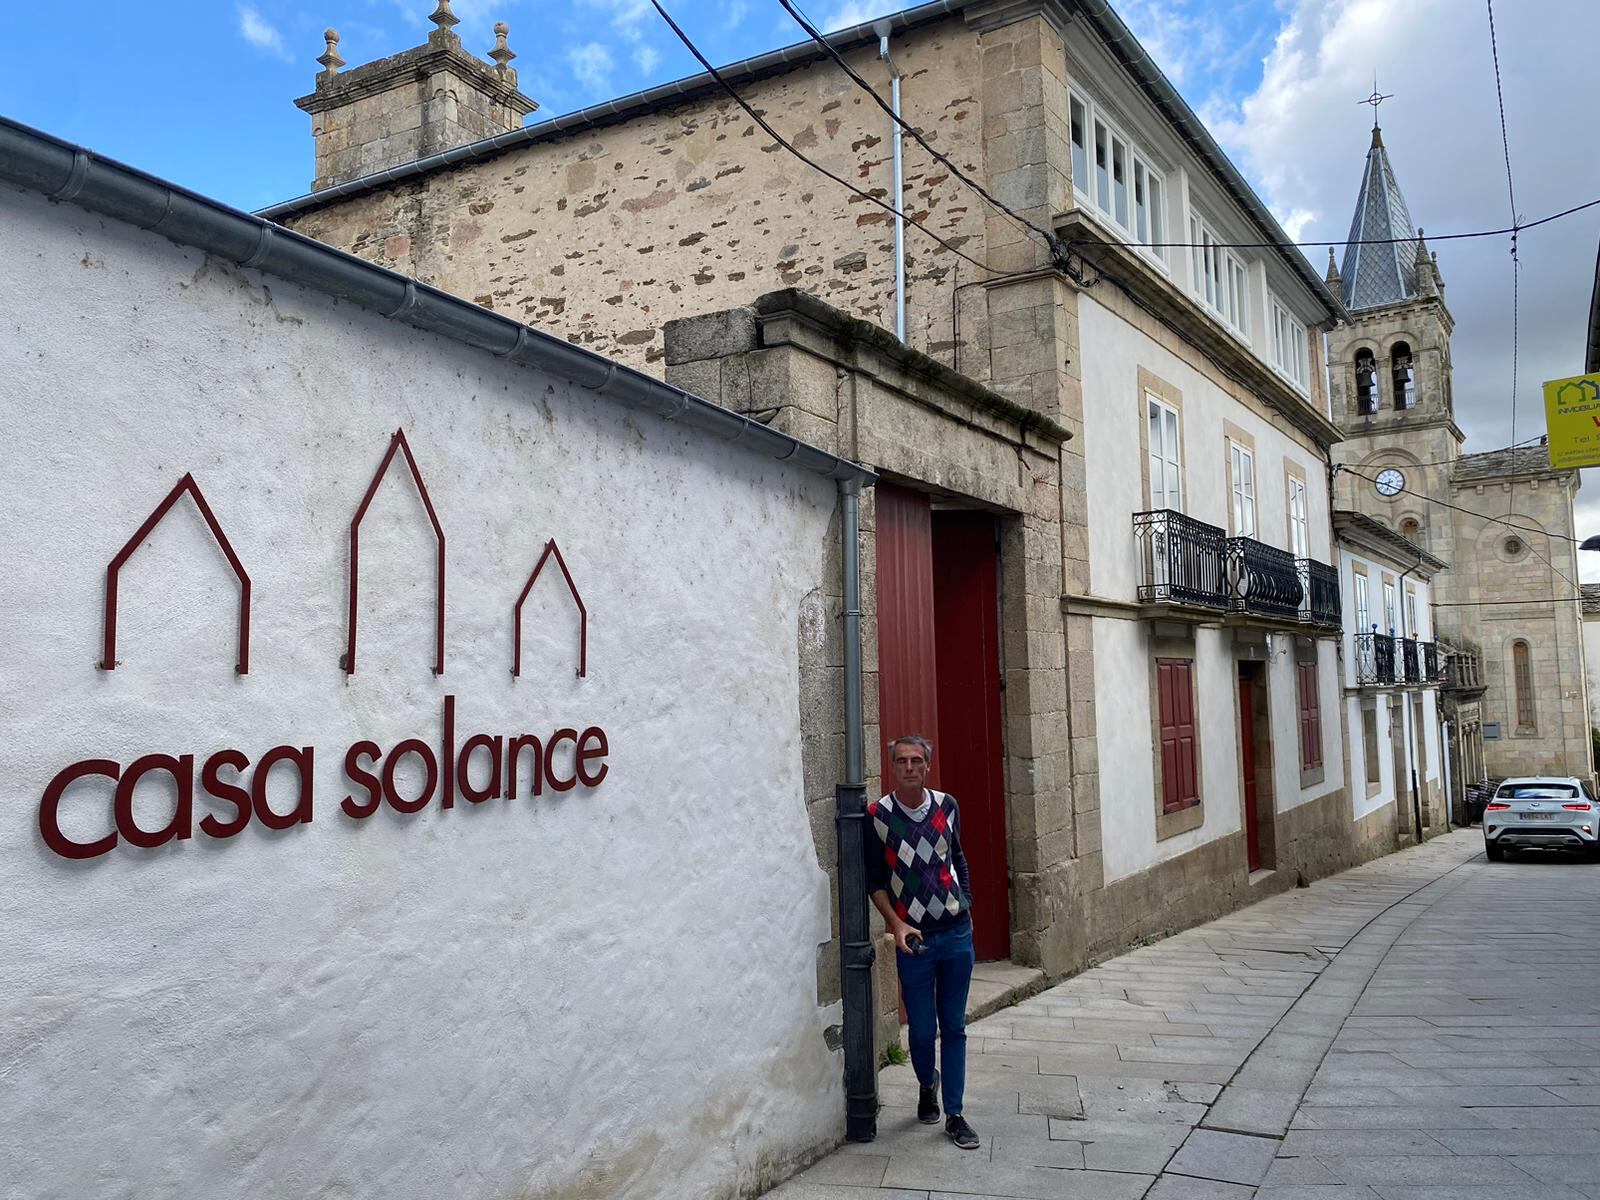 Ricardo Escobar frente a Casa Solance, en la Rúa Maior de la localidad de Sarria (Lugo).